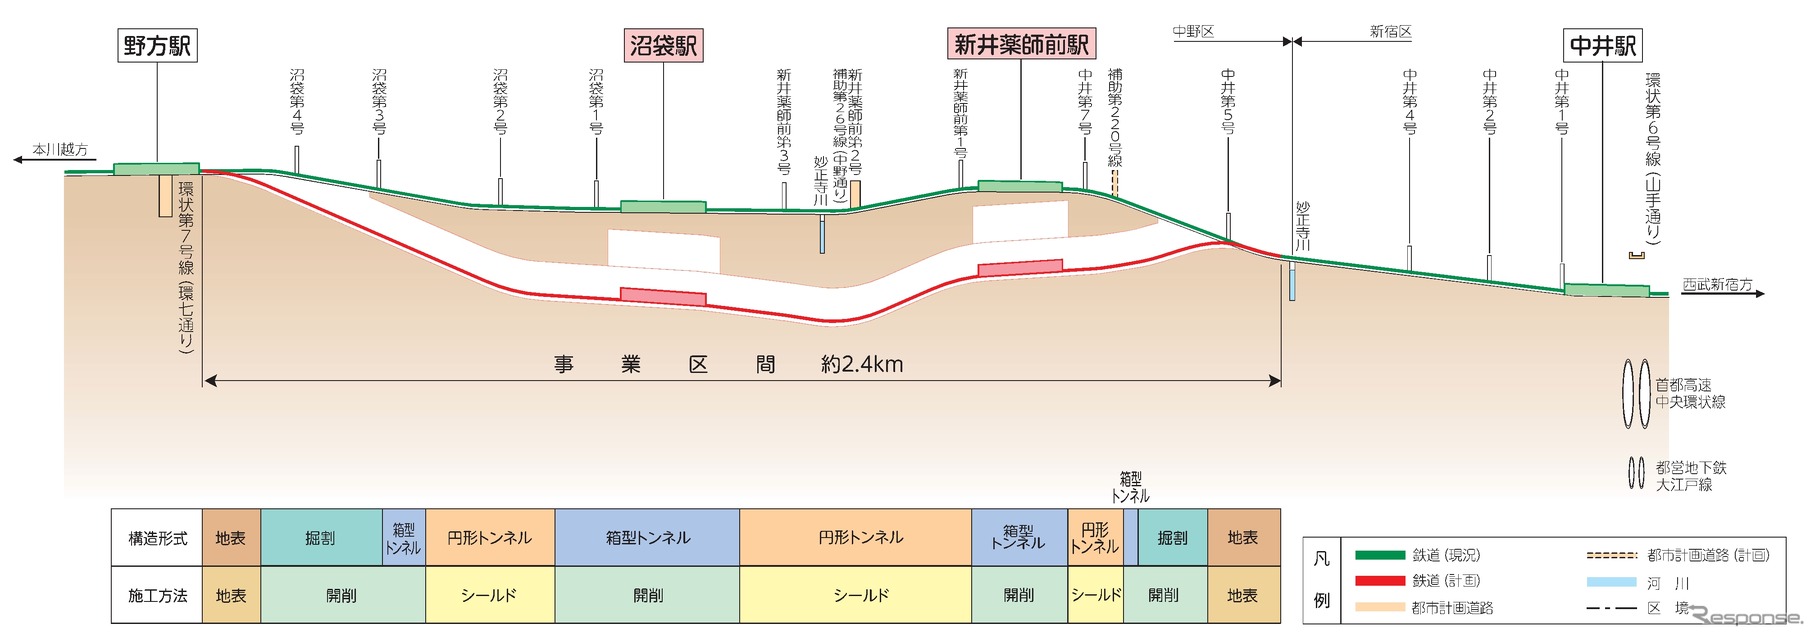 西武新宿線中井～野方間の縦断面図。中野区内の線路を地下に移す。